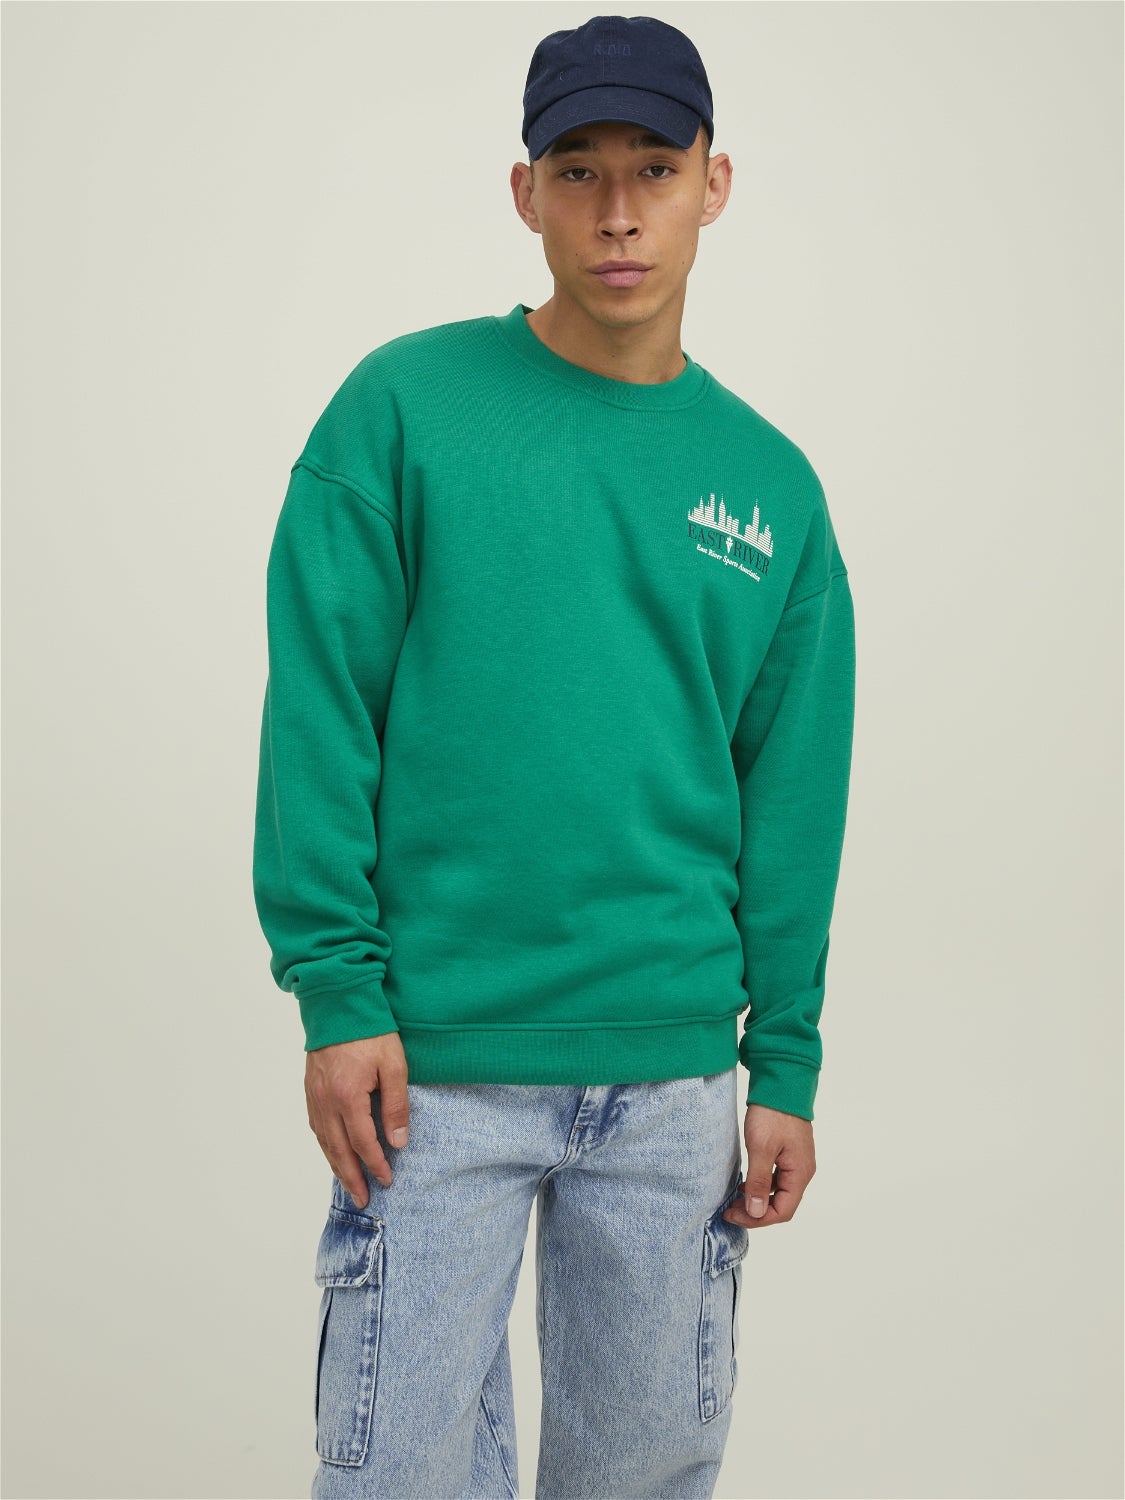 Men's Crew Neck Sweatshirts & Sweaters | JACK & JONES